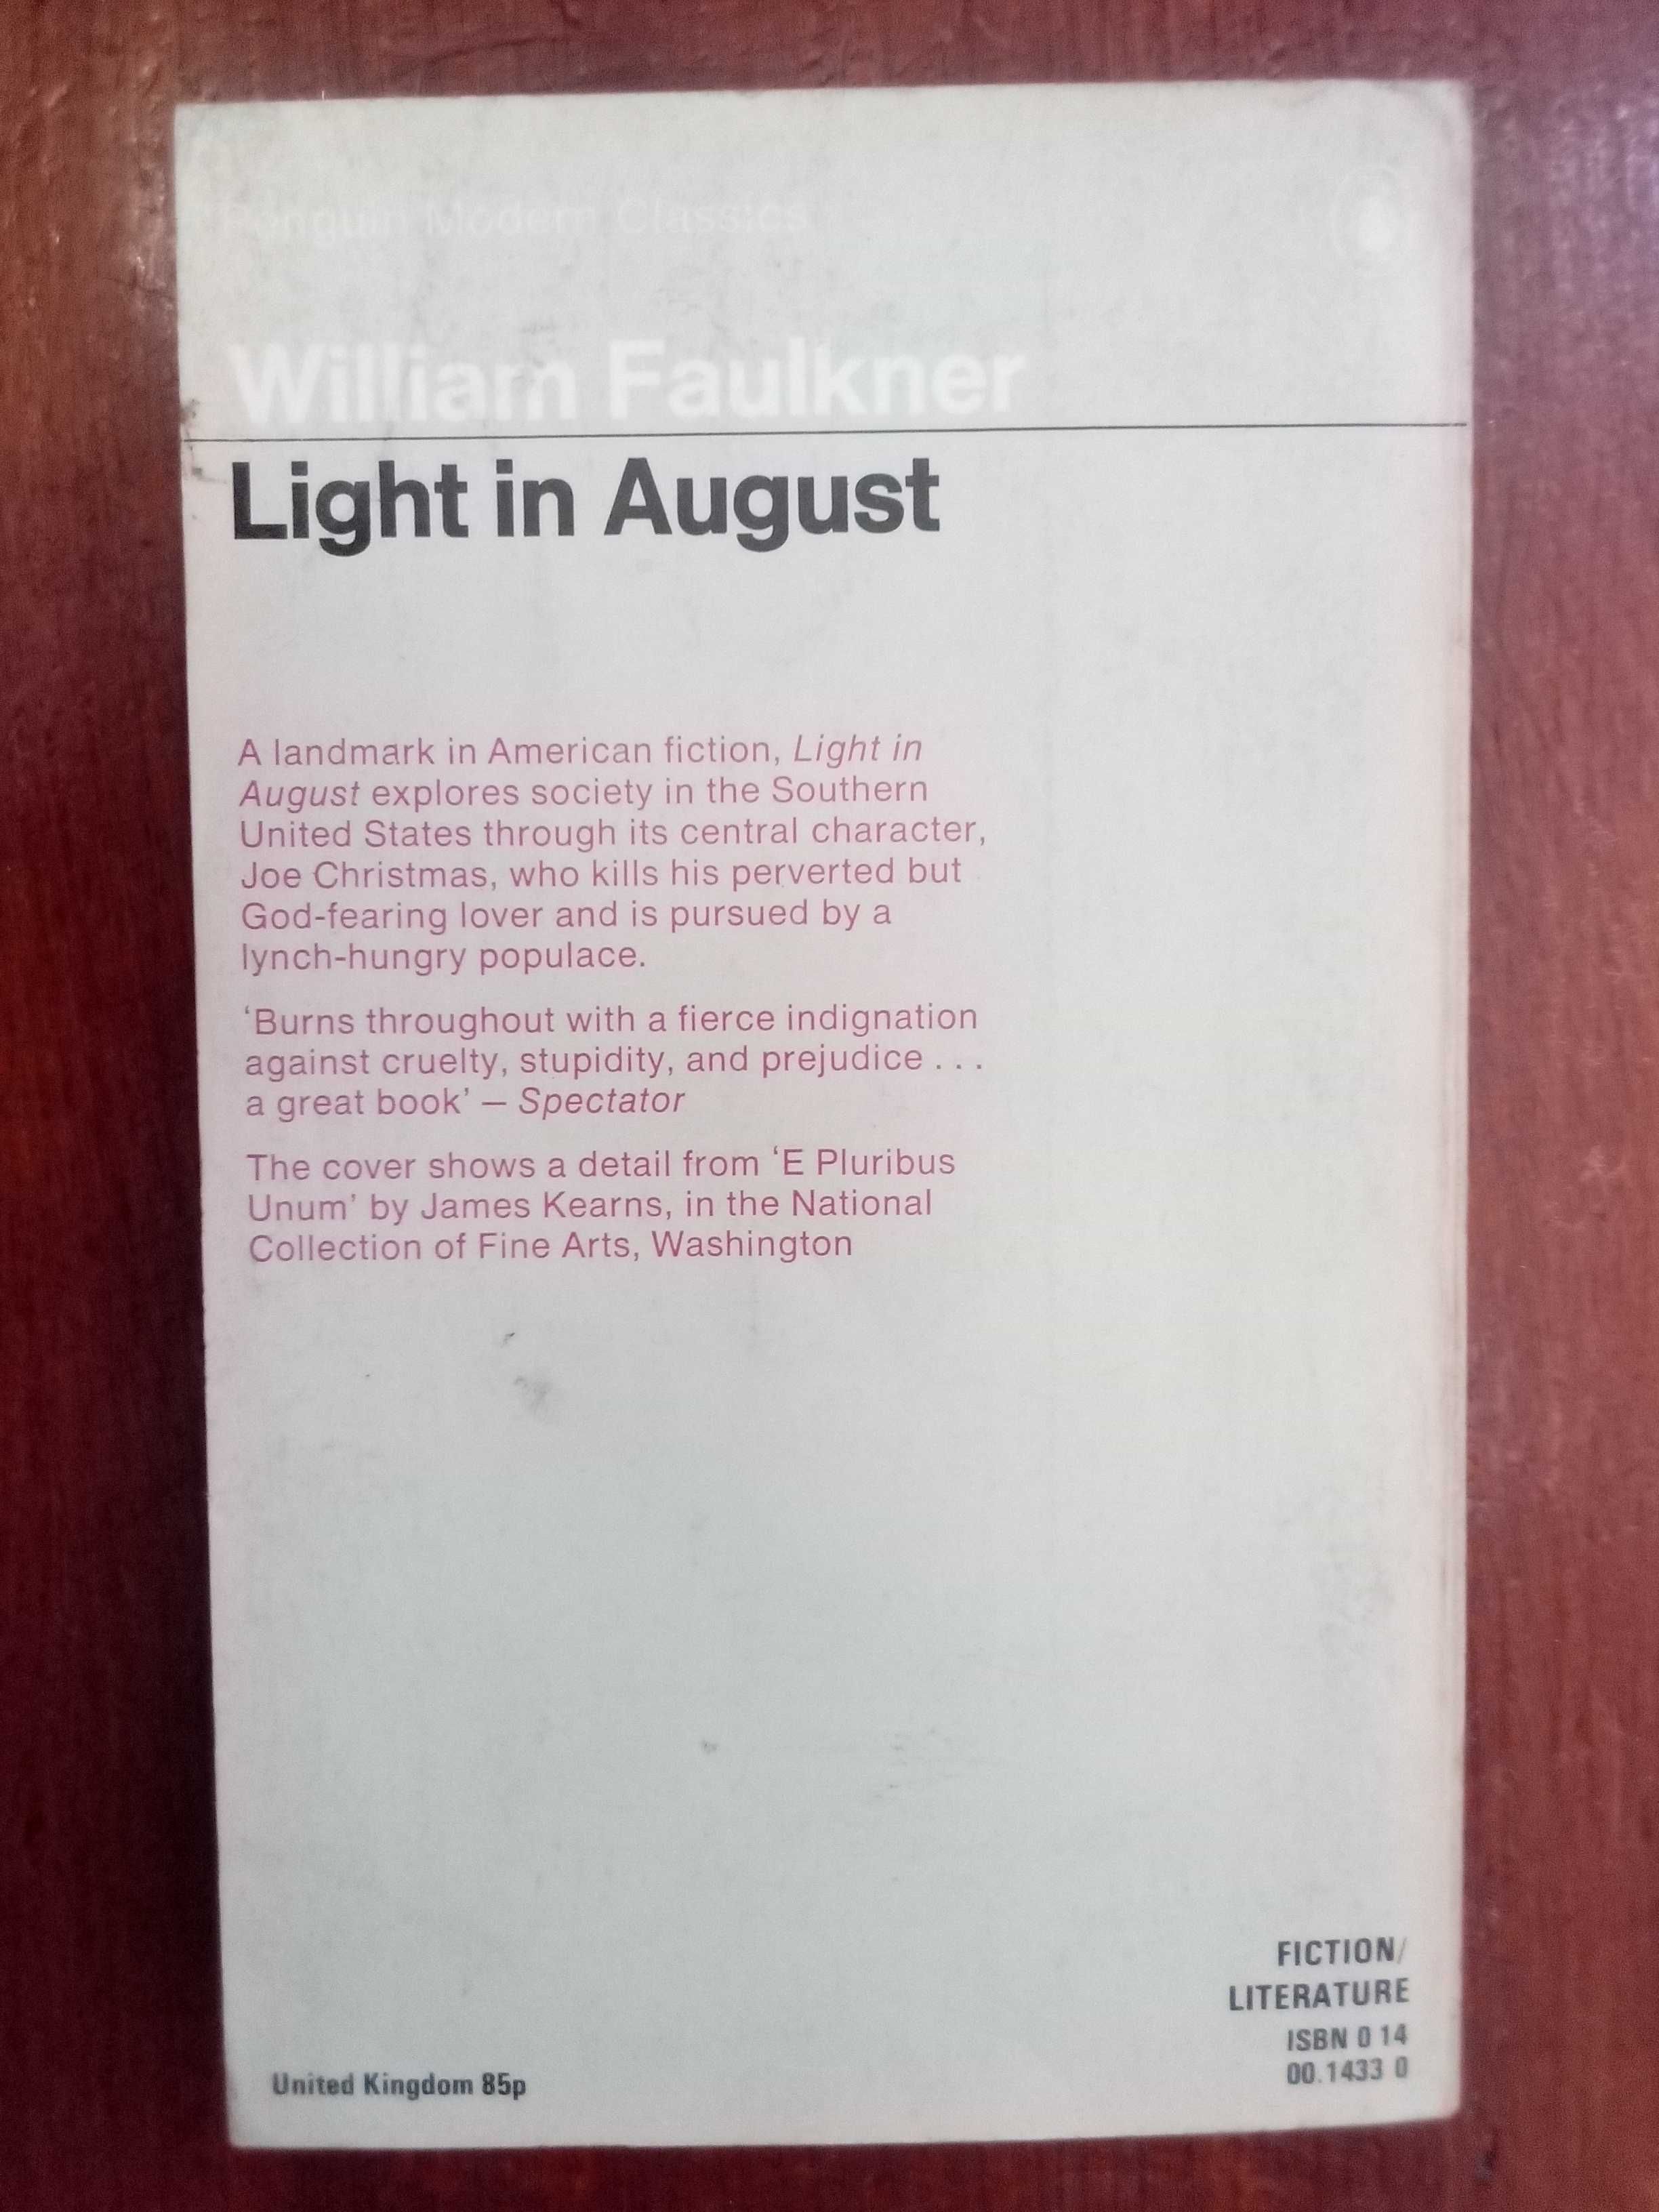 William Faulkner - Light in August